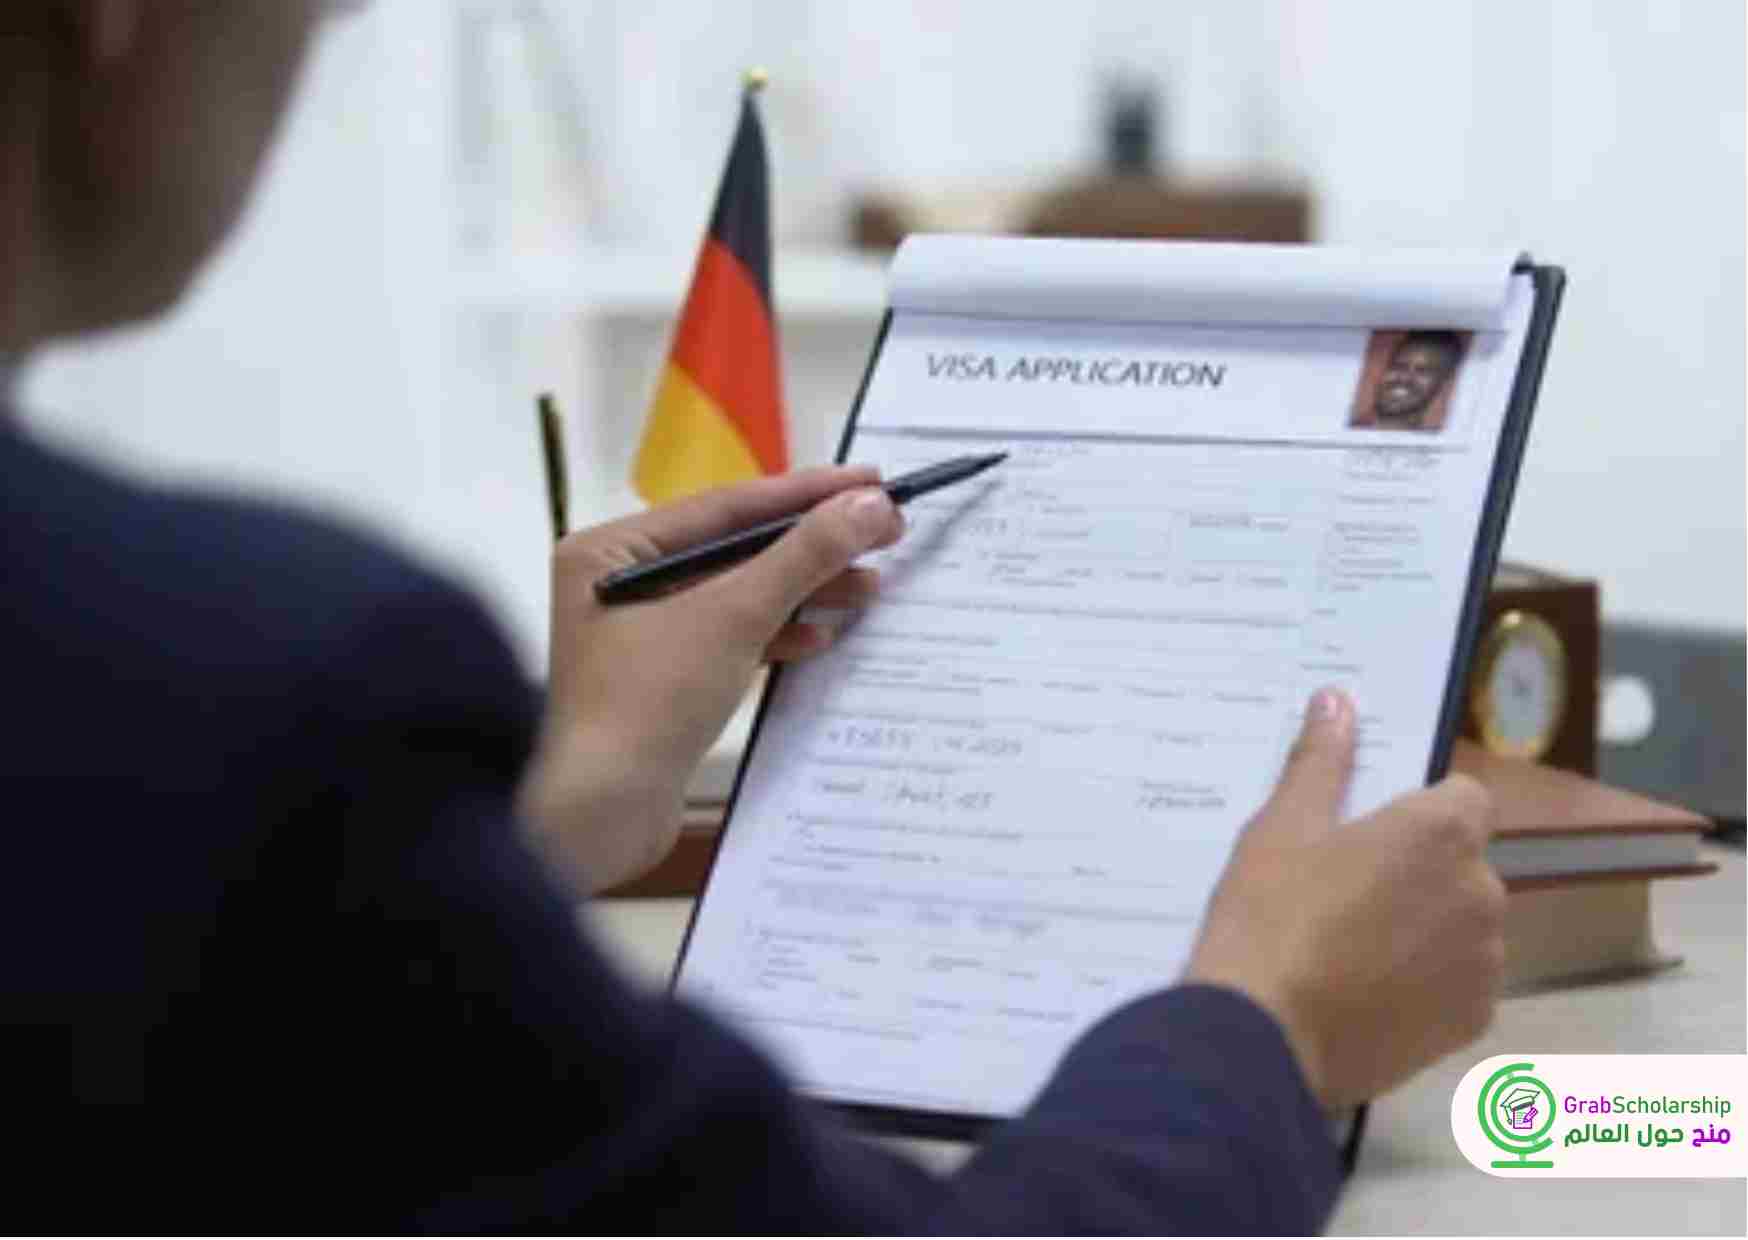 مؤسسة تطوع في المانيا تطلب متطوعين مع توفير الإقامة وراتب